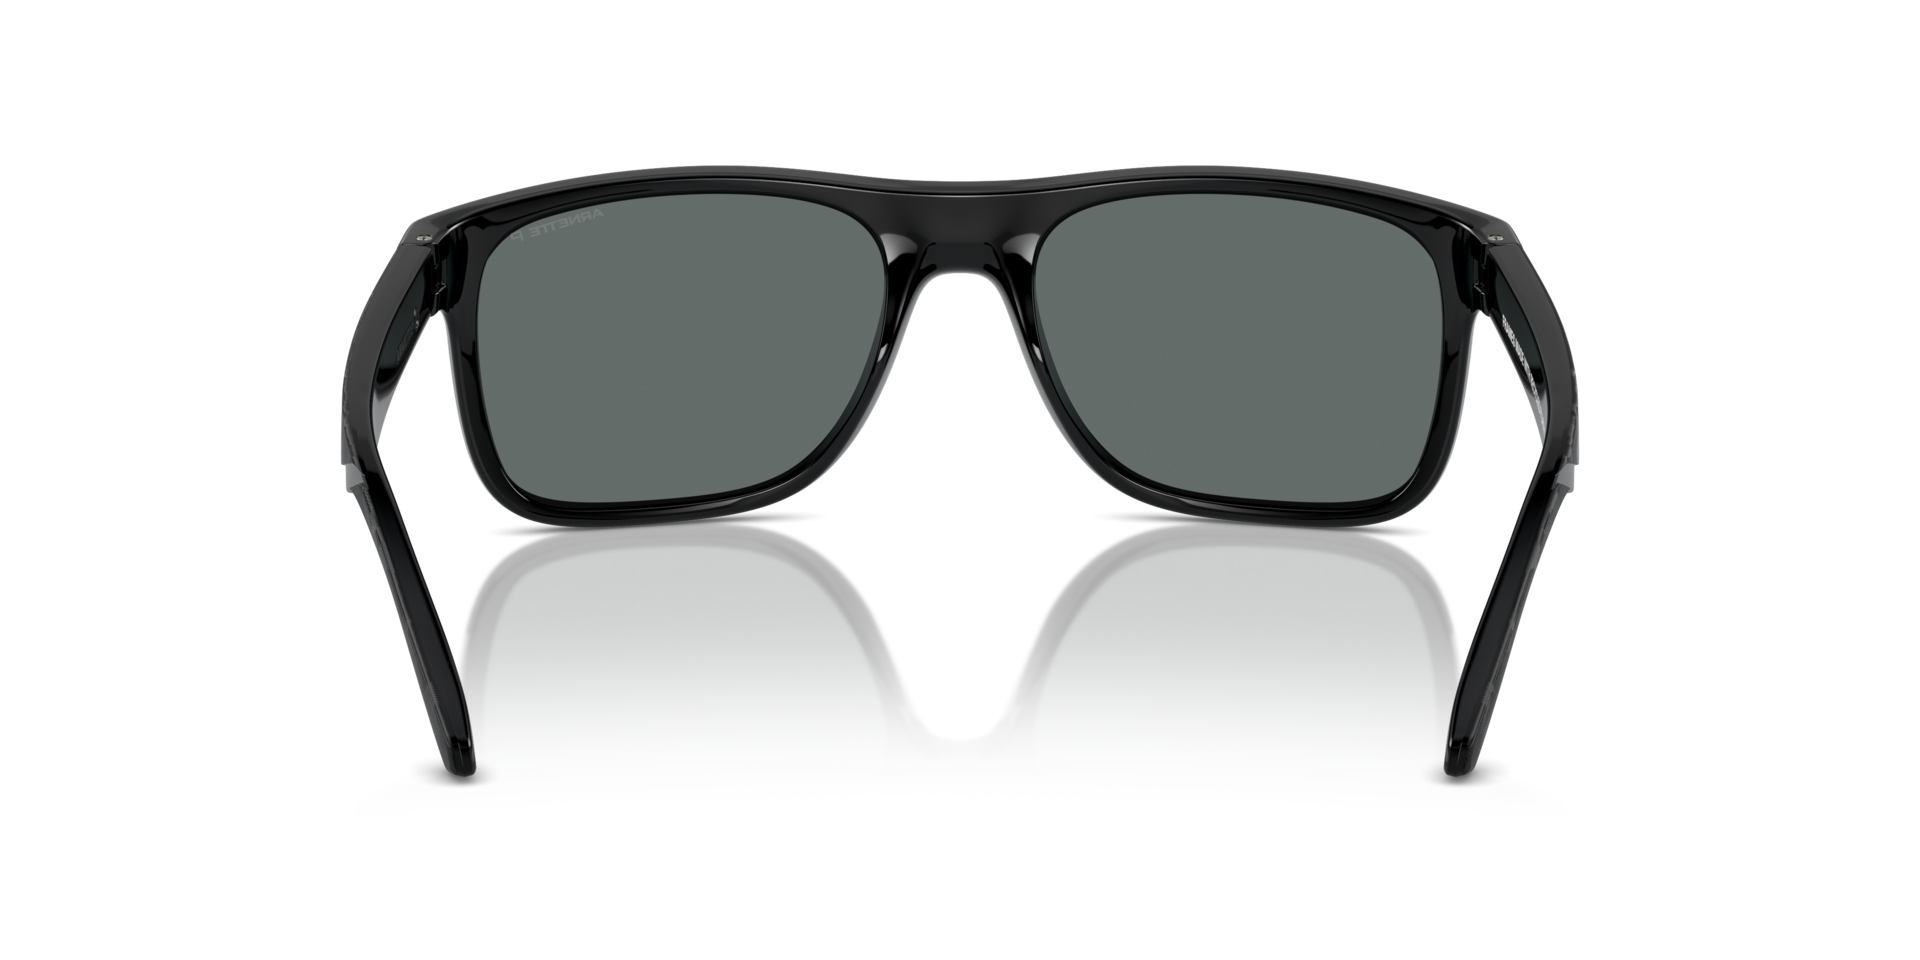 Das Bild zeigt die Sonnenbrille AN4341 290081 von der Marke Arnette in schwarz.